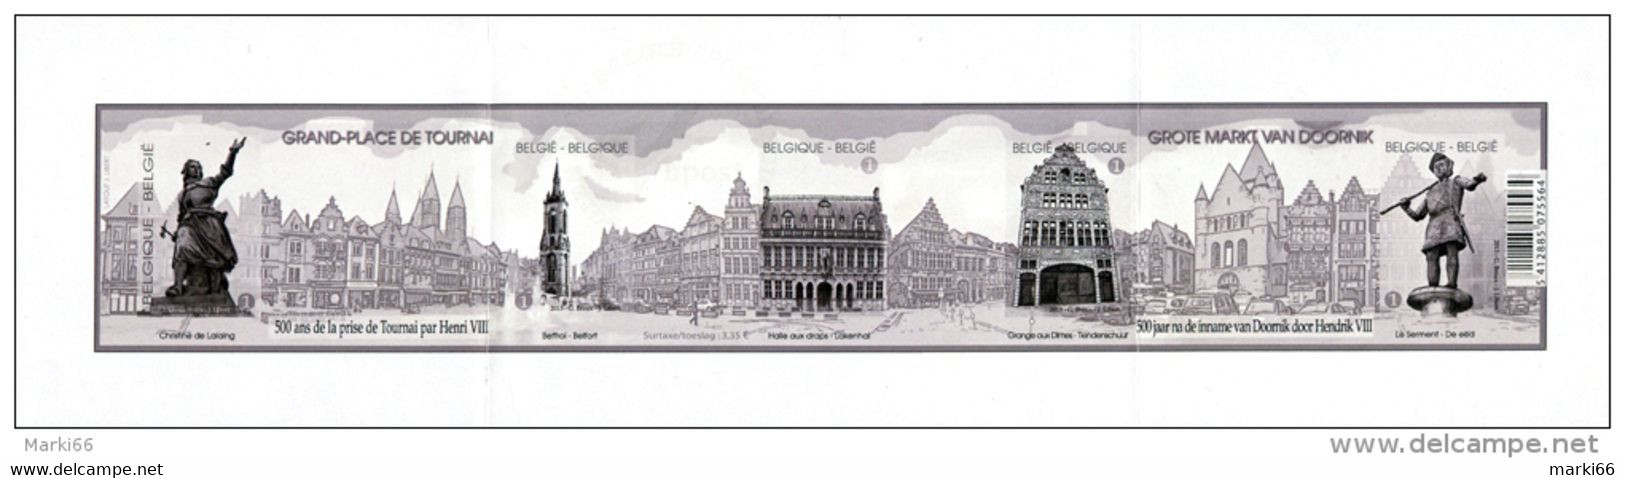 Belgium - 2013 - World Heritage - Tournai Main Square - Mint Souvenir Sheet Proof (blackprint) - Proeven & Herdruk